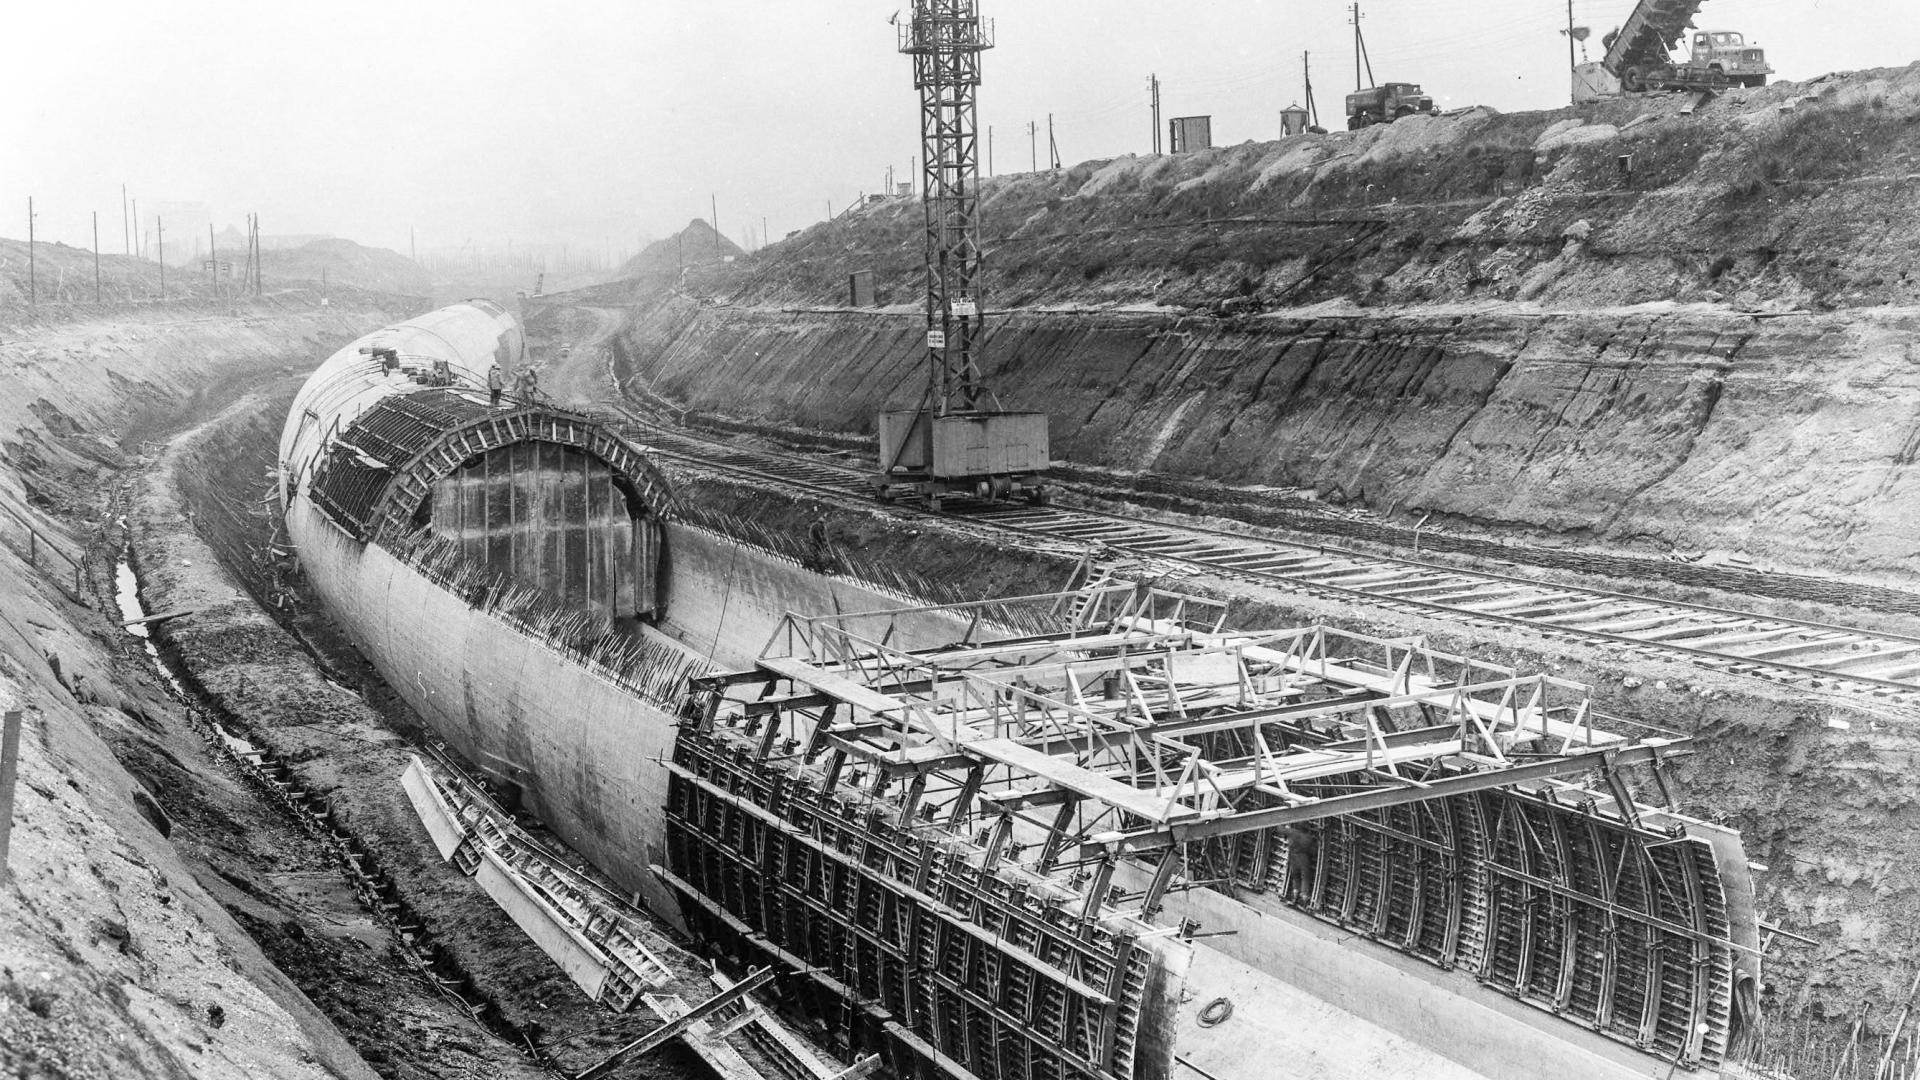 KT - blik in de historie - bouw spoortunnel in open bouwput feb 1966